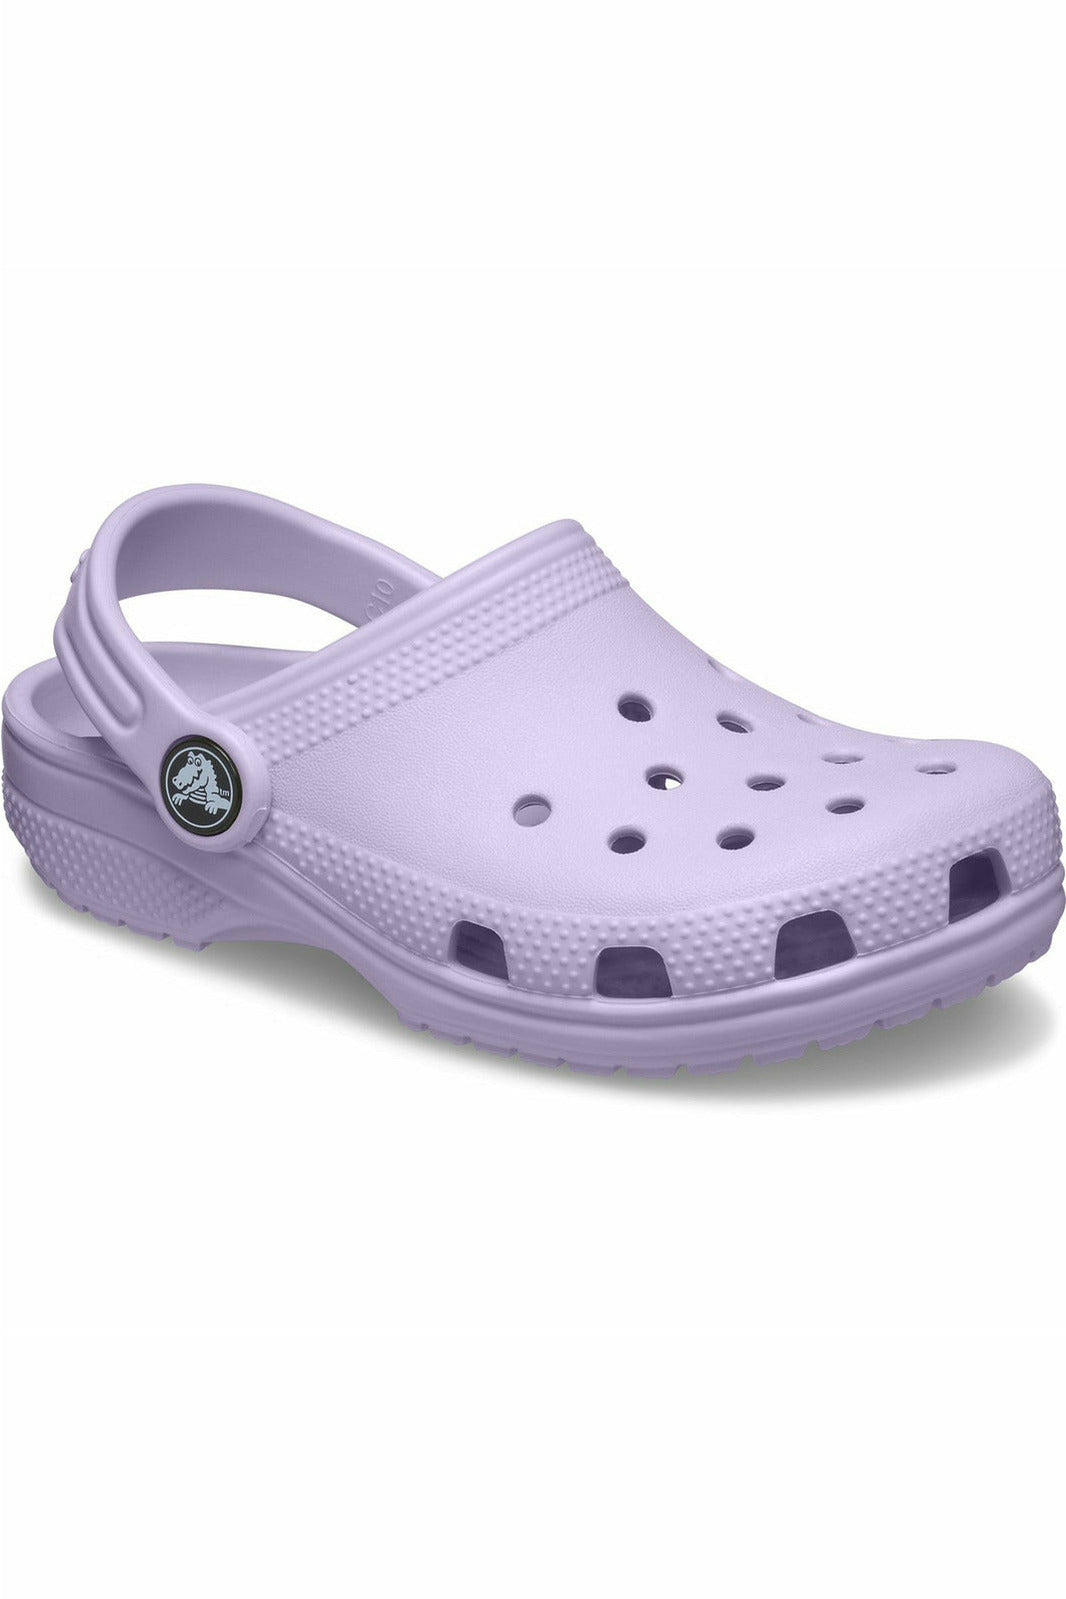 Crocs - Classic Clog KIDS/TODDLER